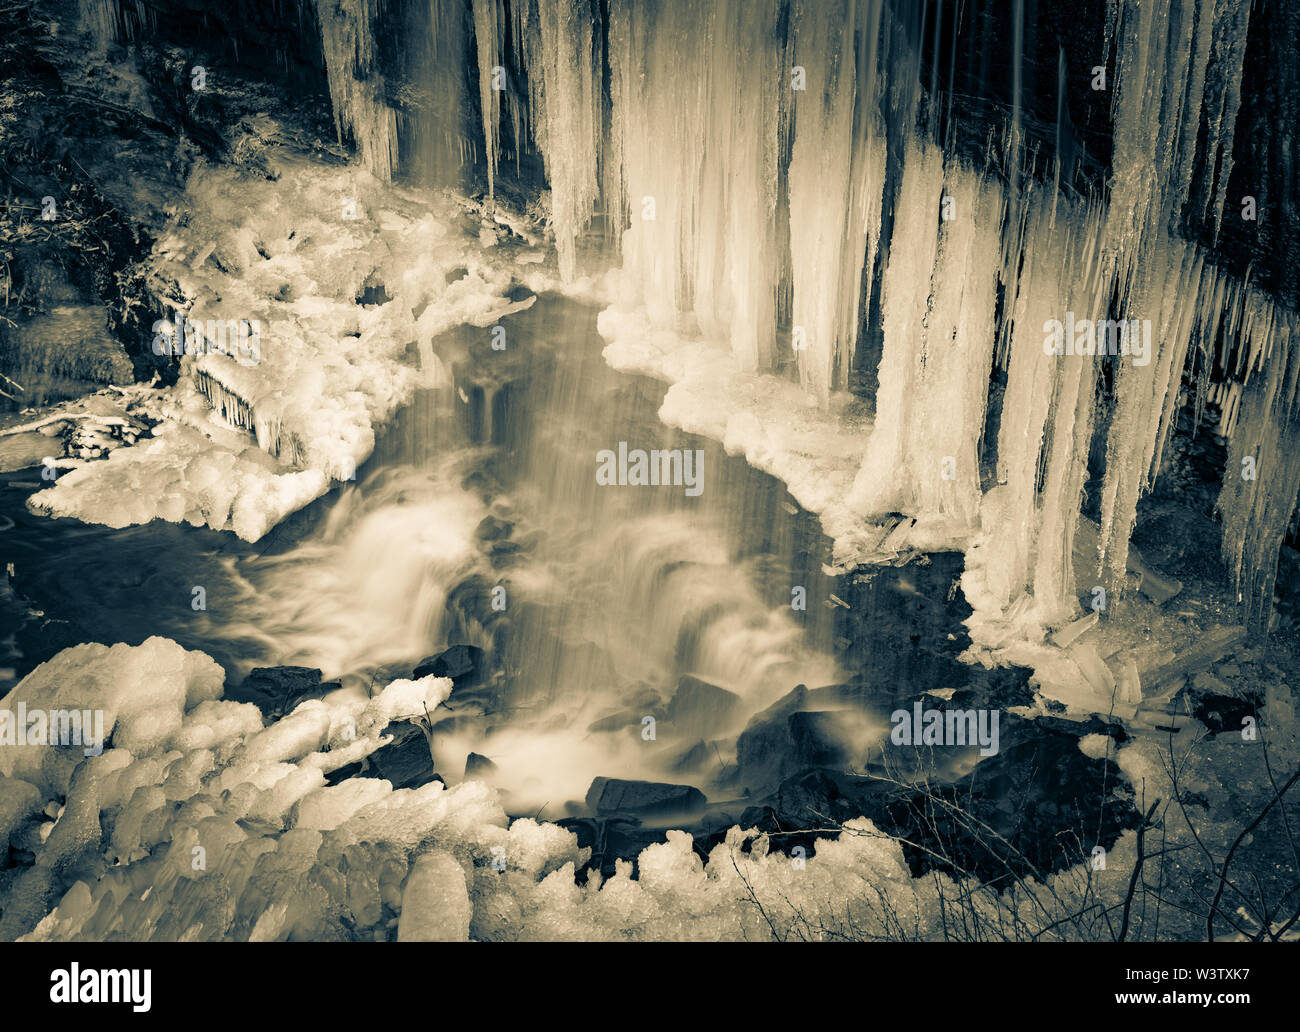 Duotone of a part frozen Grassy Creek Falls, near Little Switzerland, North Carolina, USA. Stock Photo